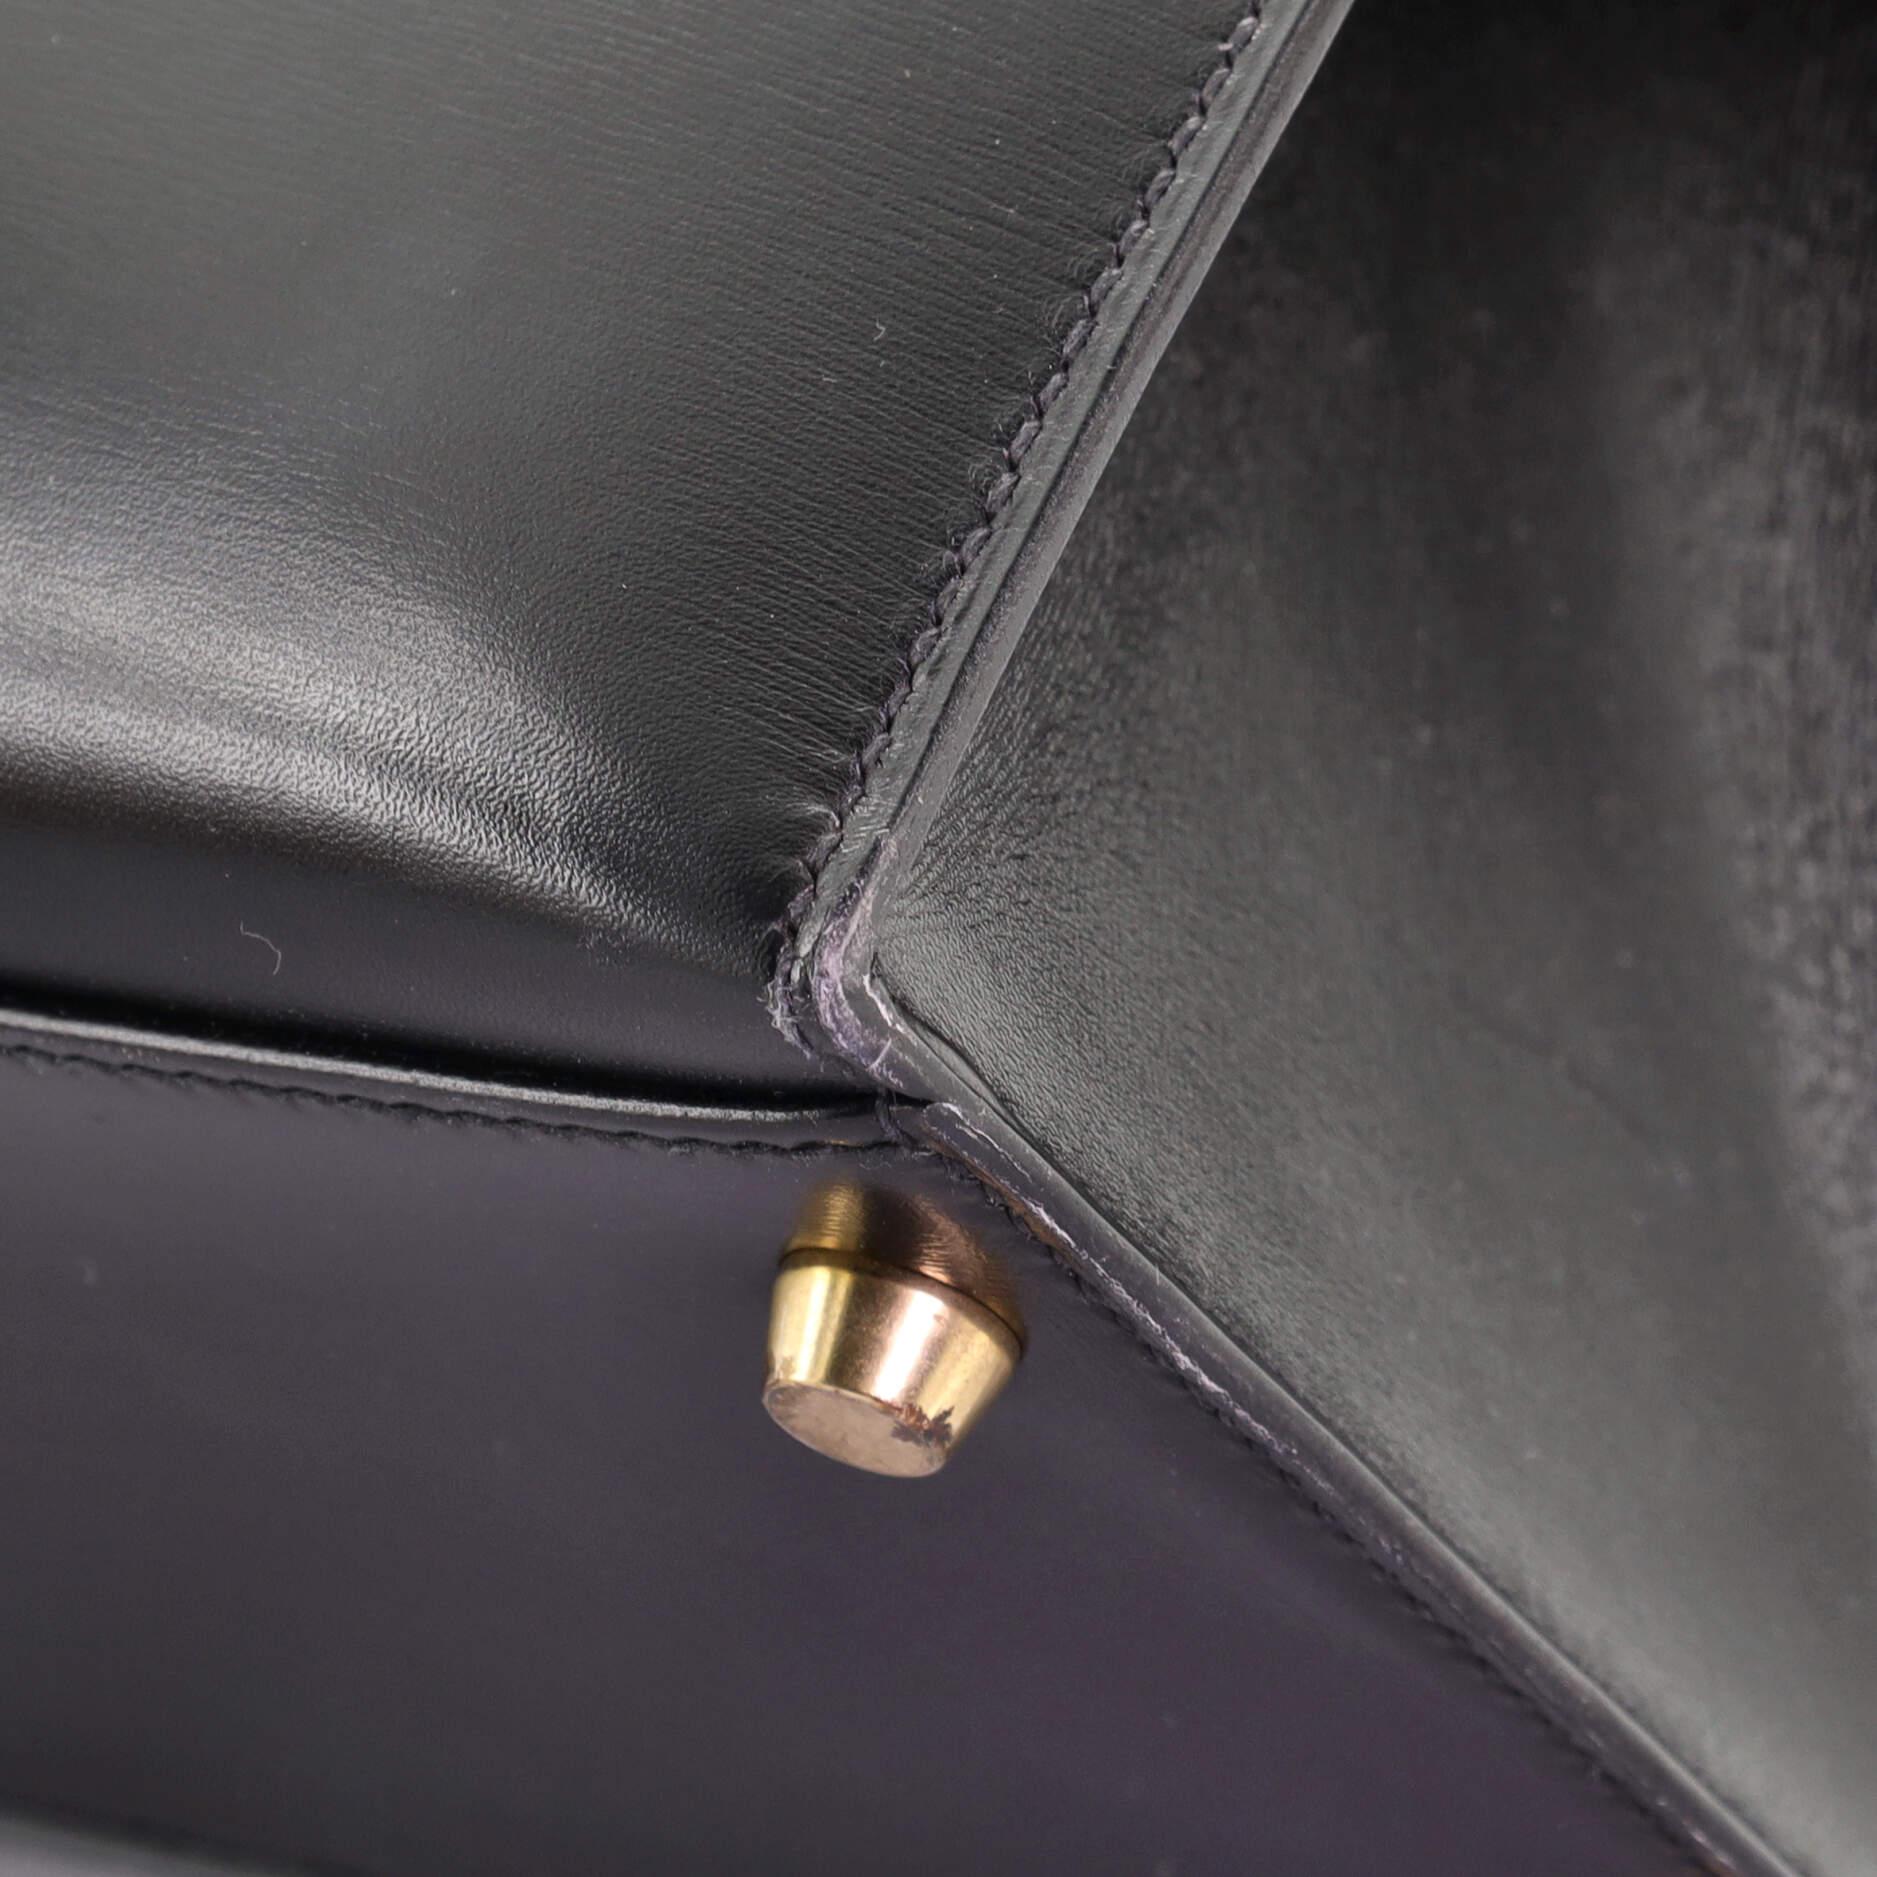 Women's or Men's Hermes Kelly Handbag Noir Box Calf with Gold Hardware 35